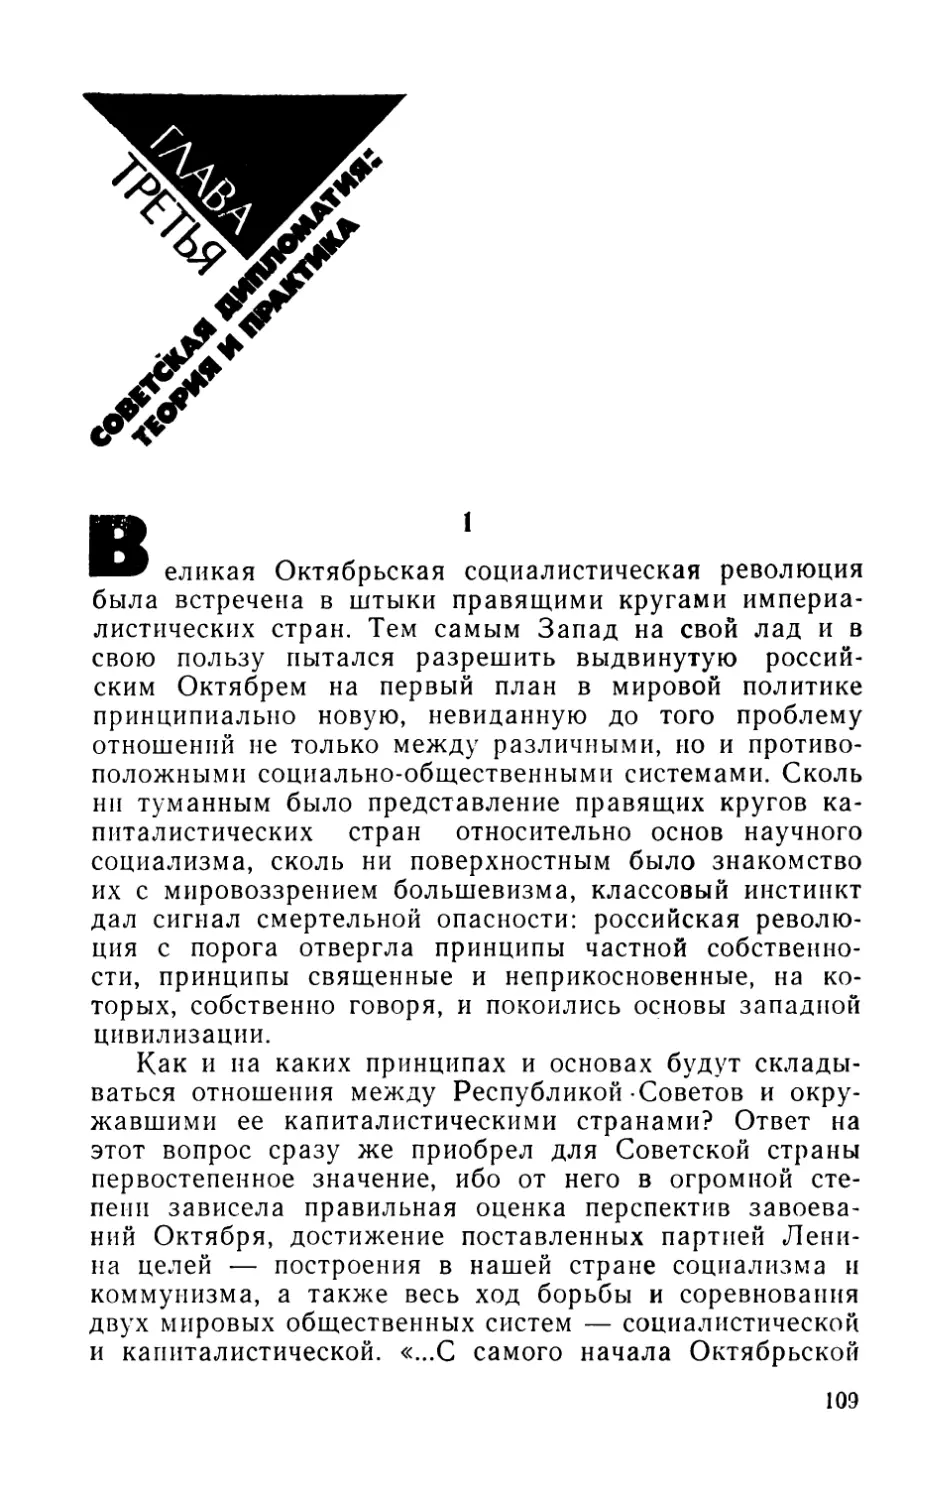 Глава третья. Советская дипломатия: теория и практика